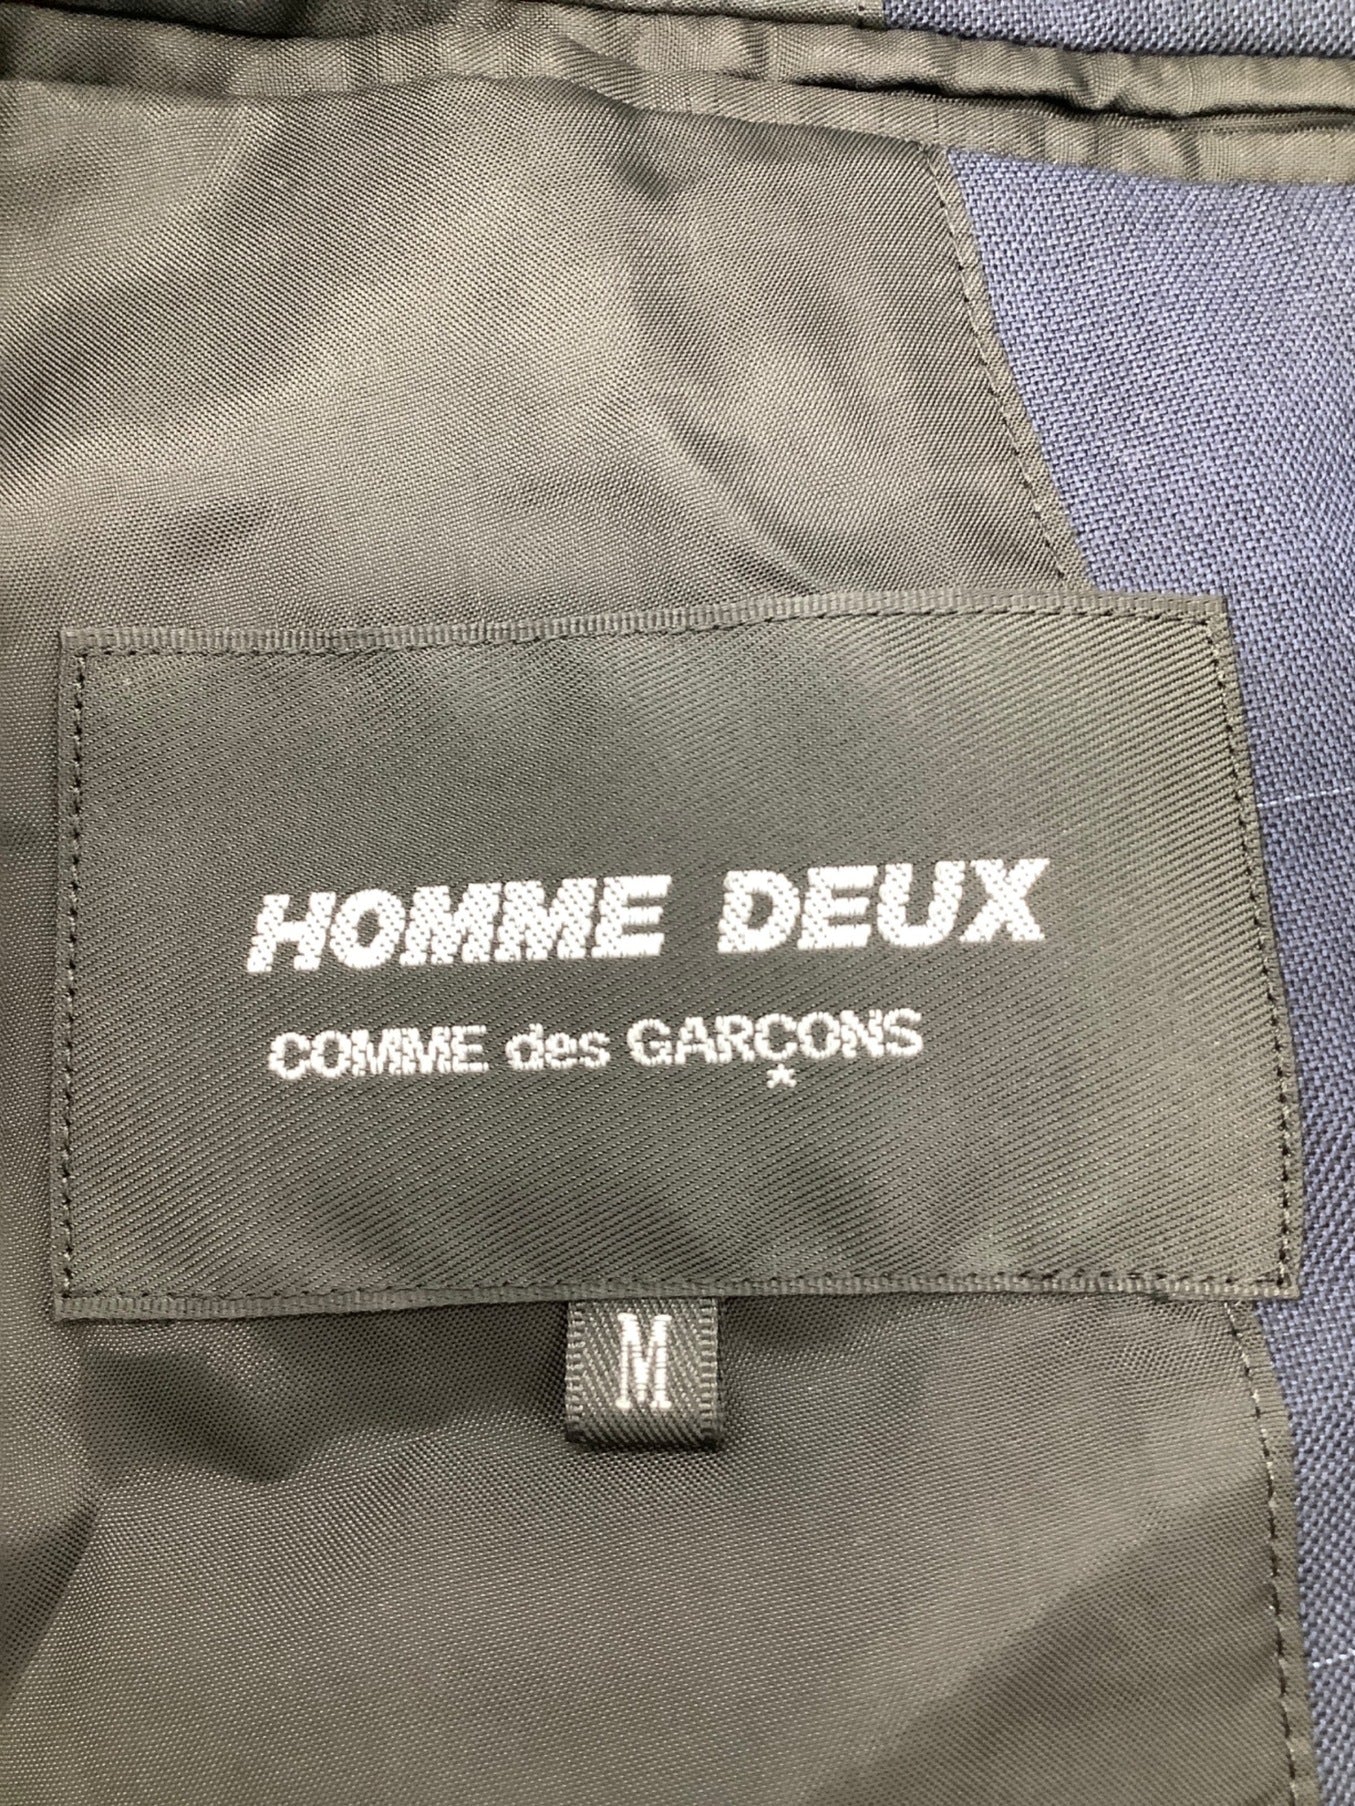 Comme des Garcons Homme Deux 재킷 다른 재료 스위칭 DE-J037